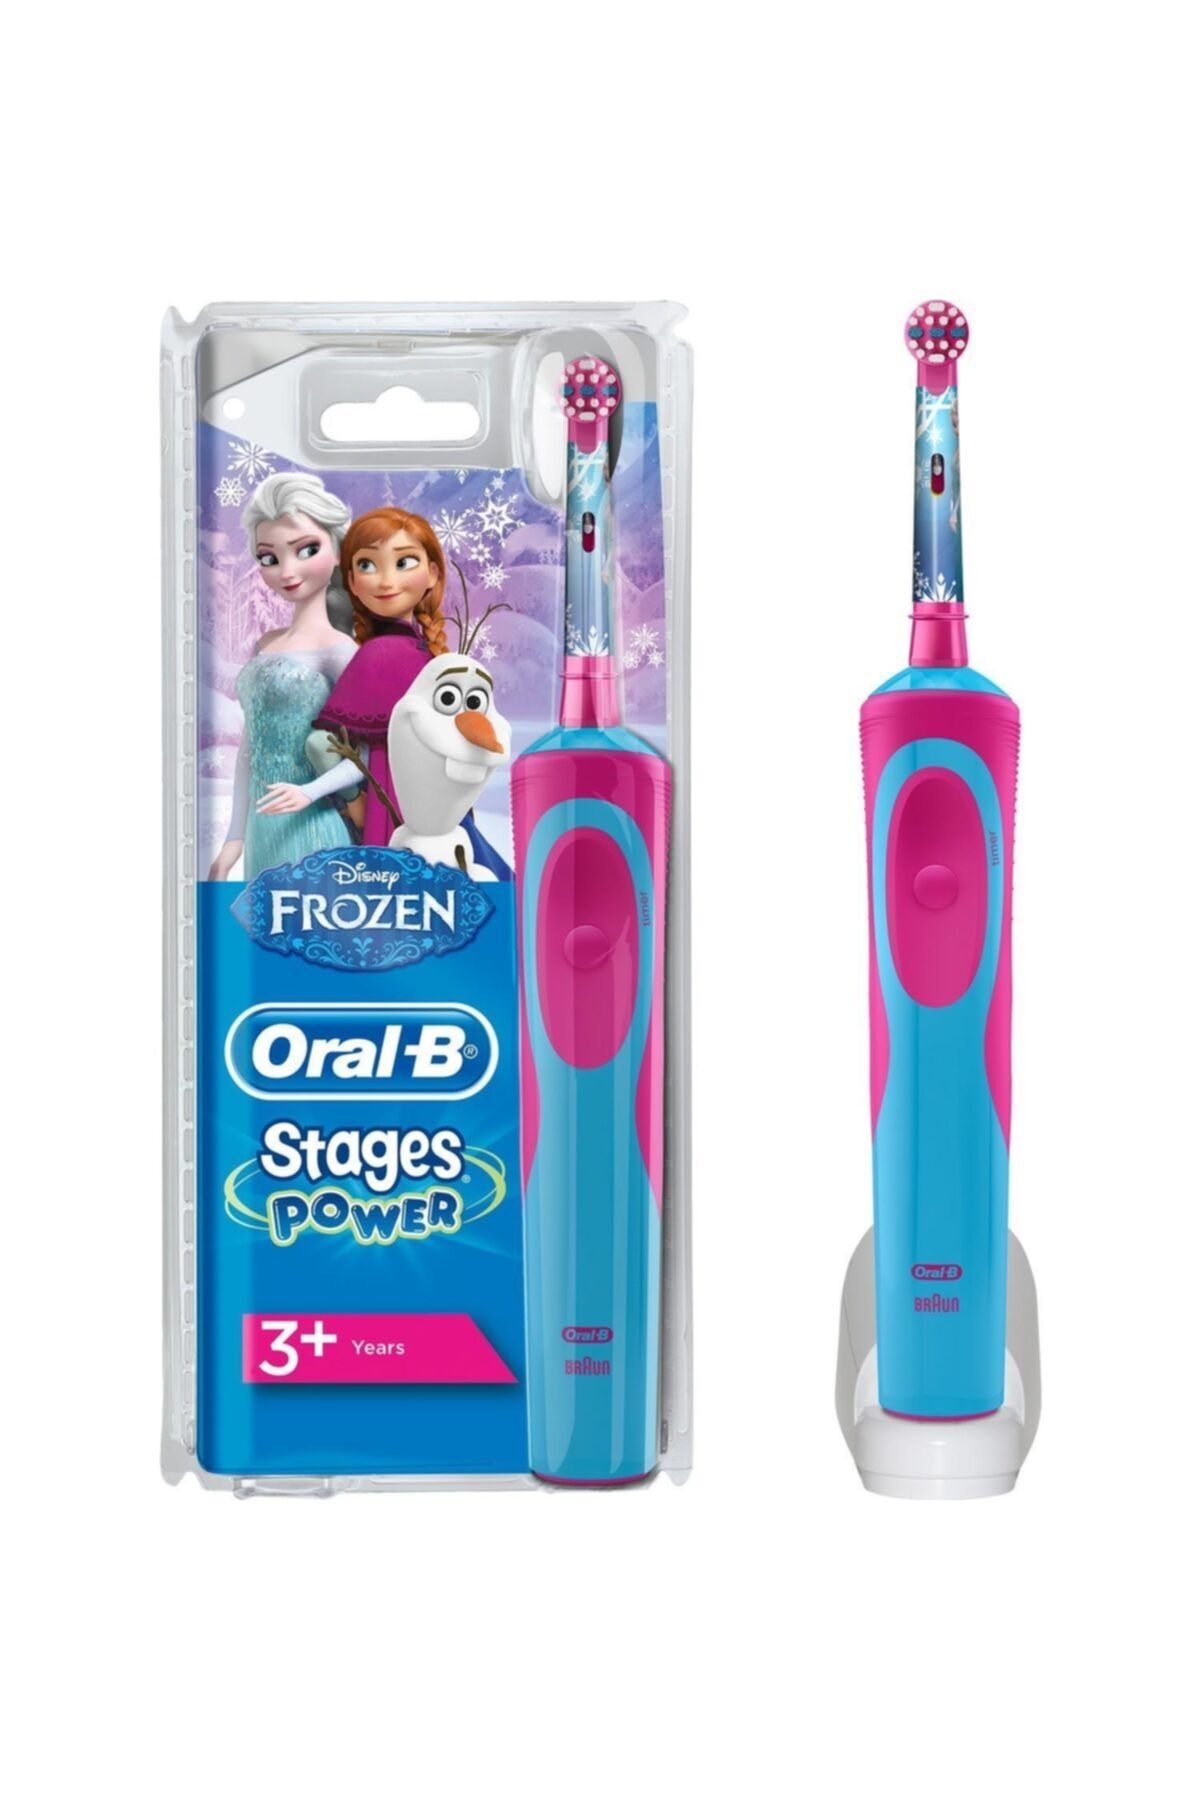 Oral-B Boze Frozen Çocuklar Için Şarj Edilebilir Diş Fırçası 3+ Yaş